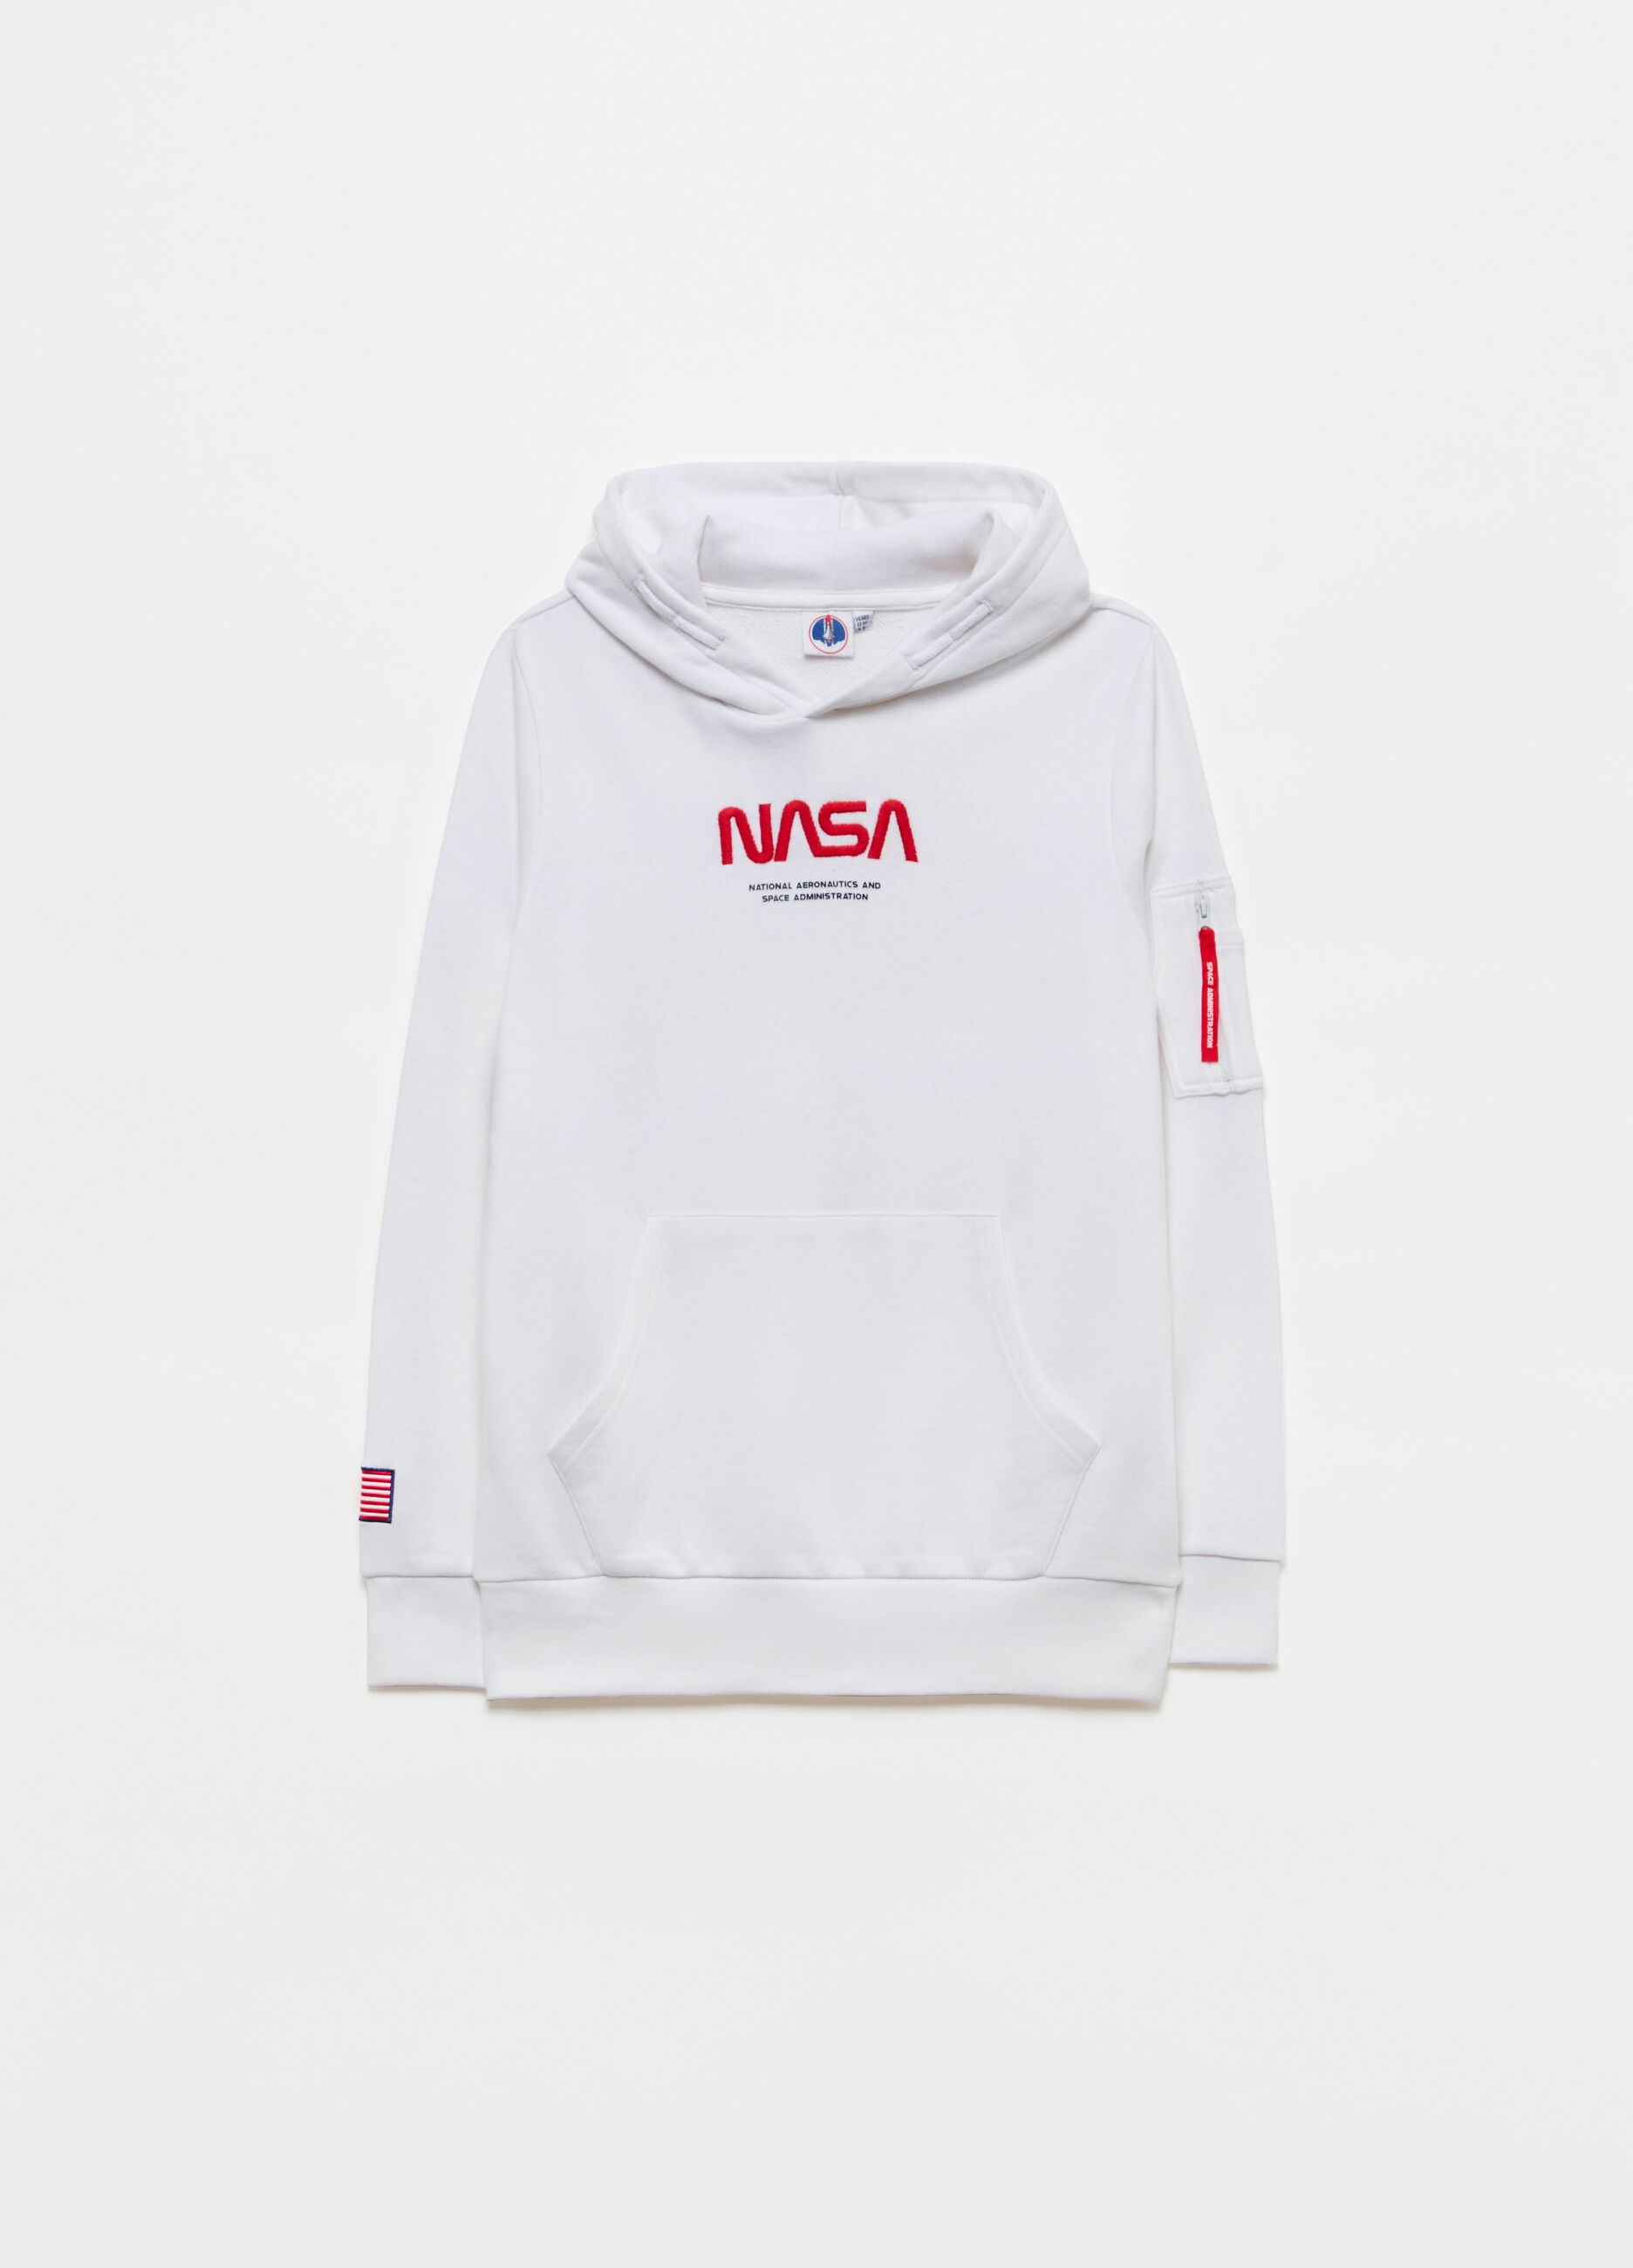 NASA sweatshirt with hood